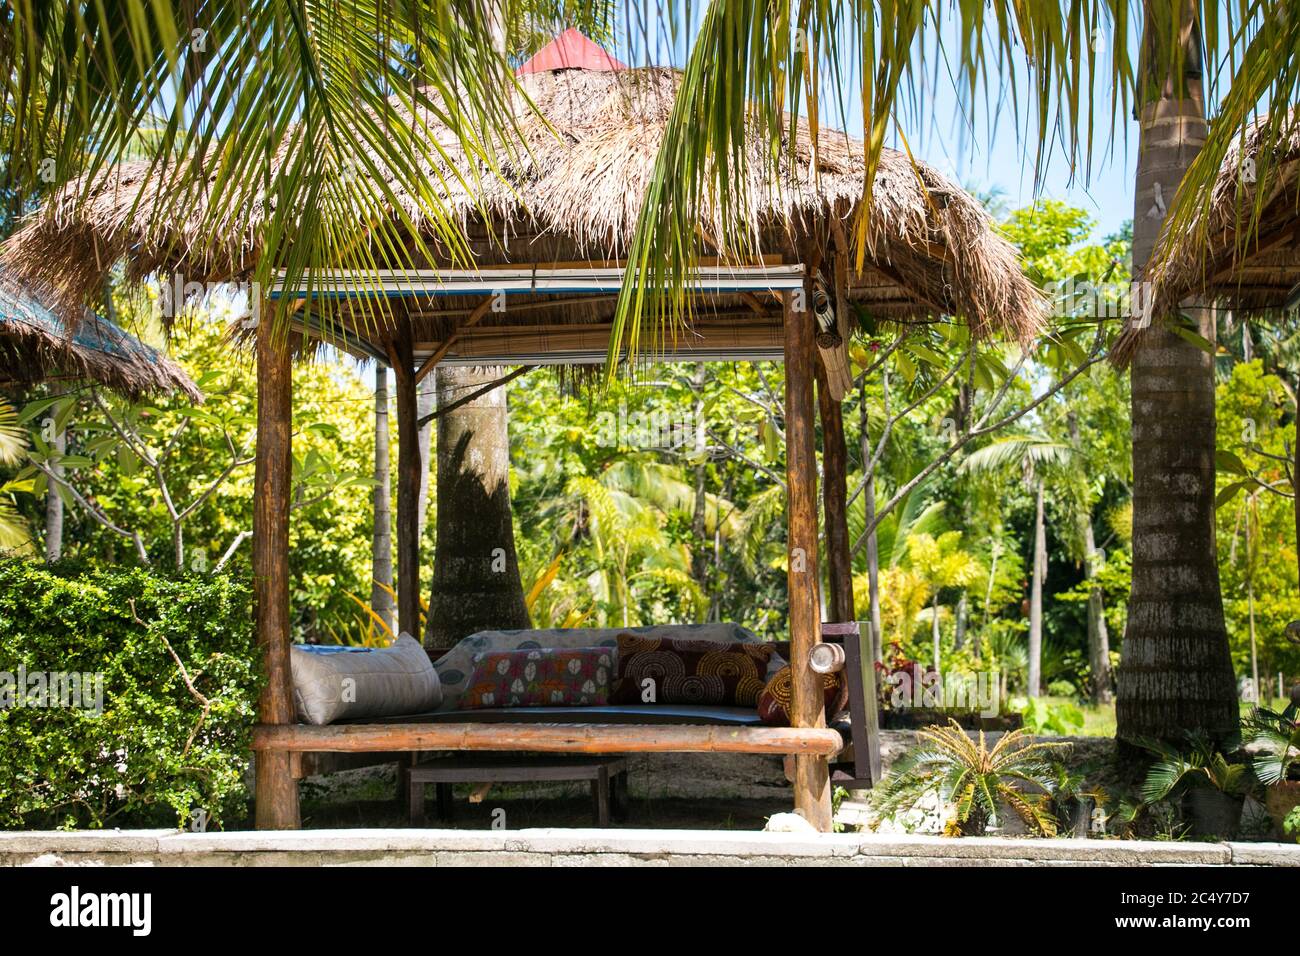 Un confortable lit de repos extérieur est installé au milieu des palmiers environnants Banque D'Images